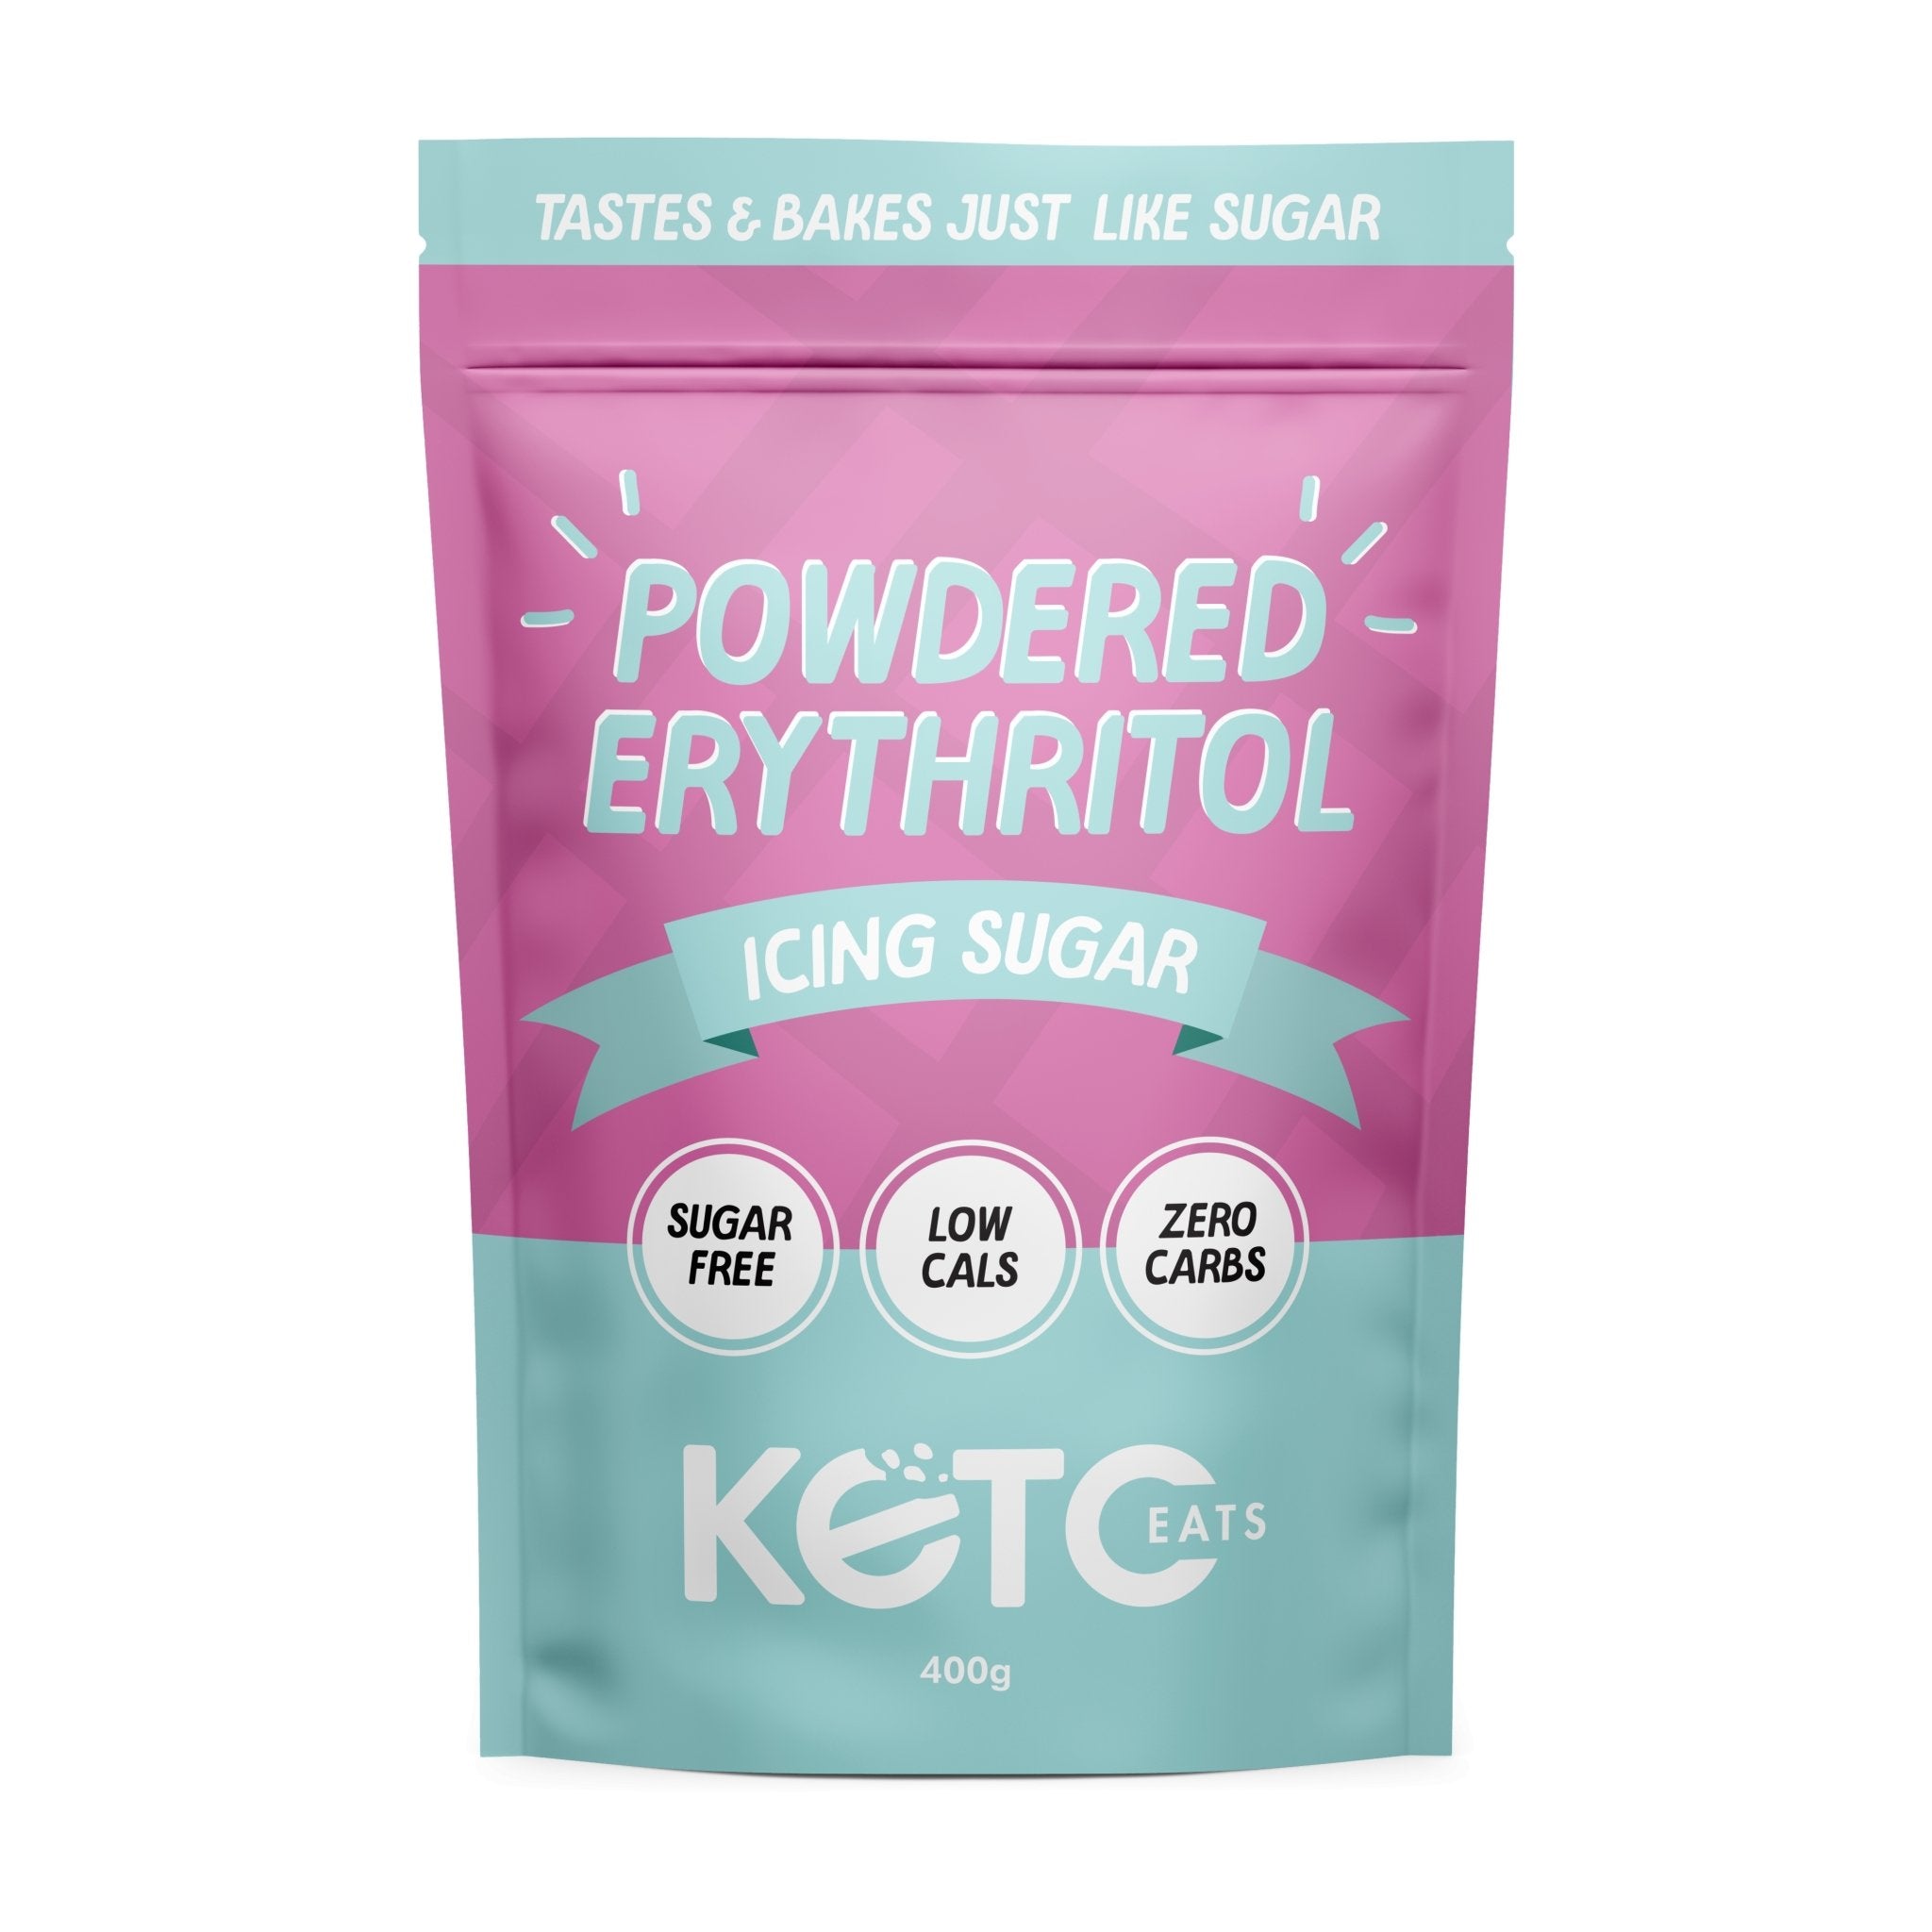 Powered Erythritol - Icing Sugar Alternative - Yo Keto